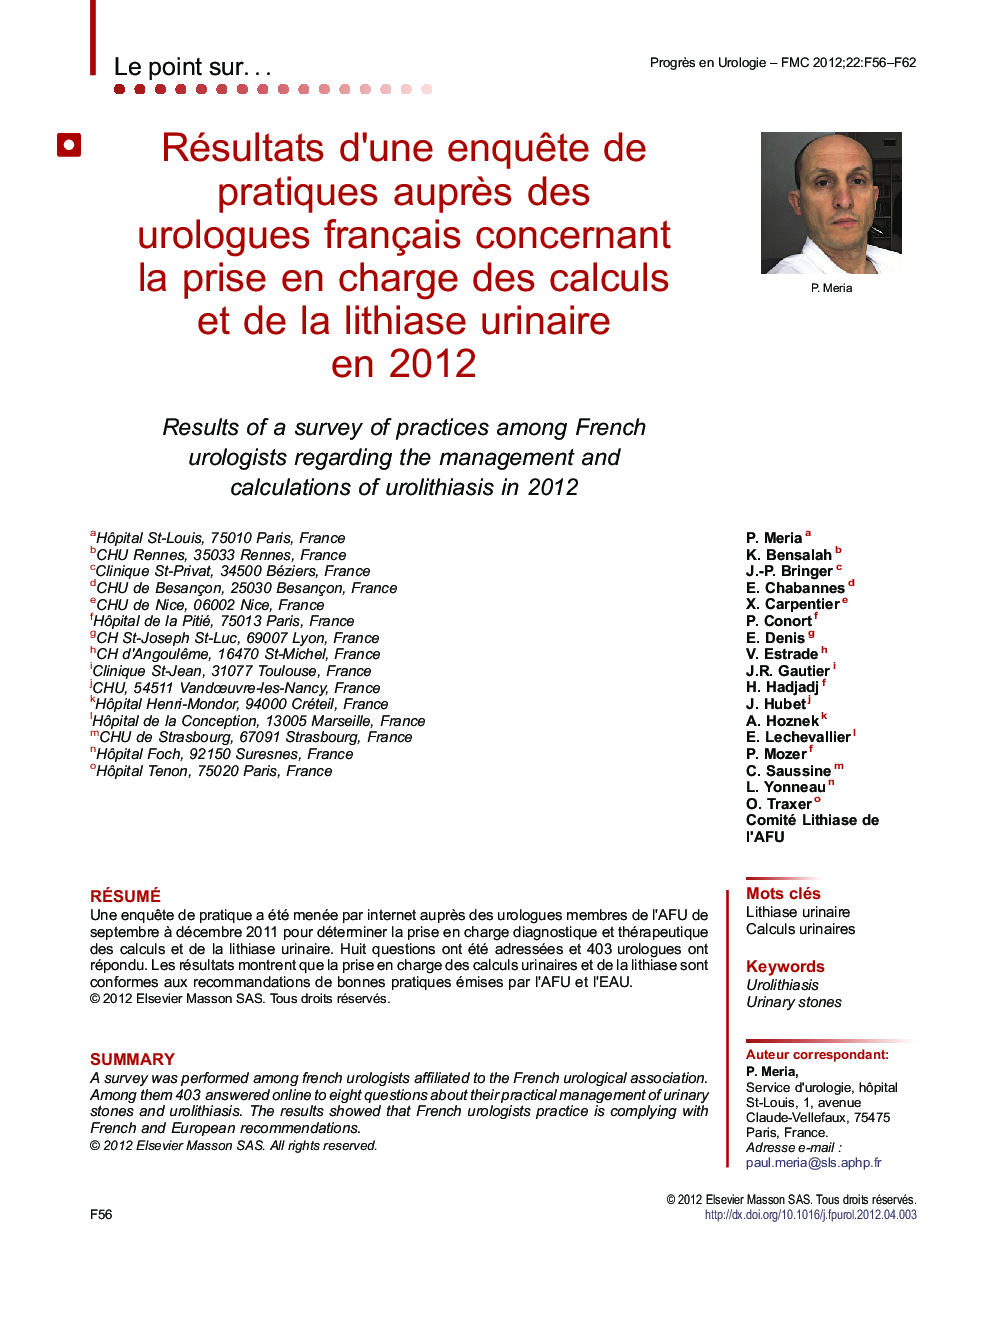 Résultats d'une enquÃªte de pratiques auprÃ¨s des urologues français concernant la prise en charge des calculs et de la lithiase urinaire en 2012